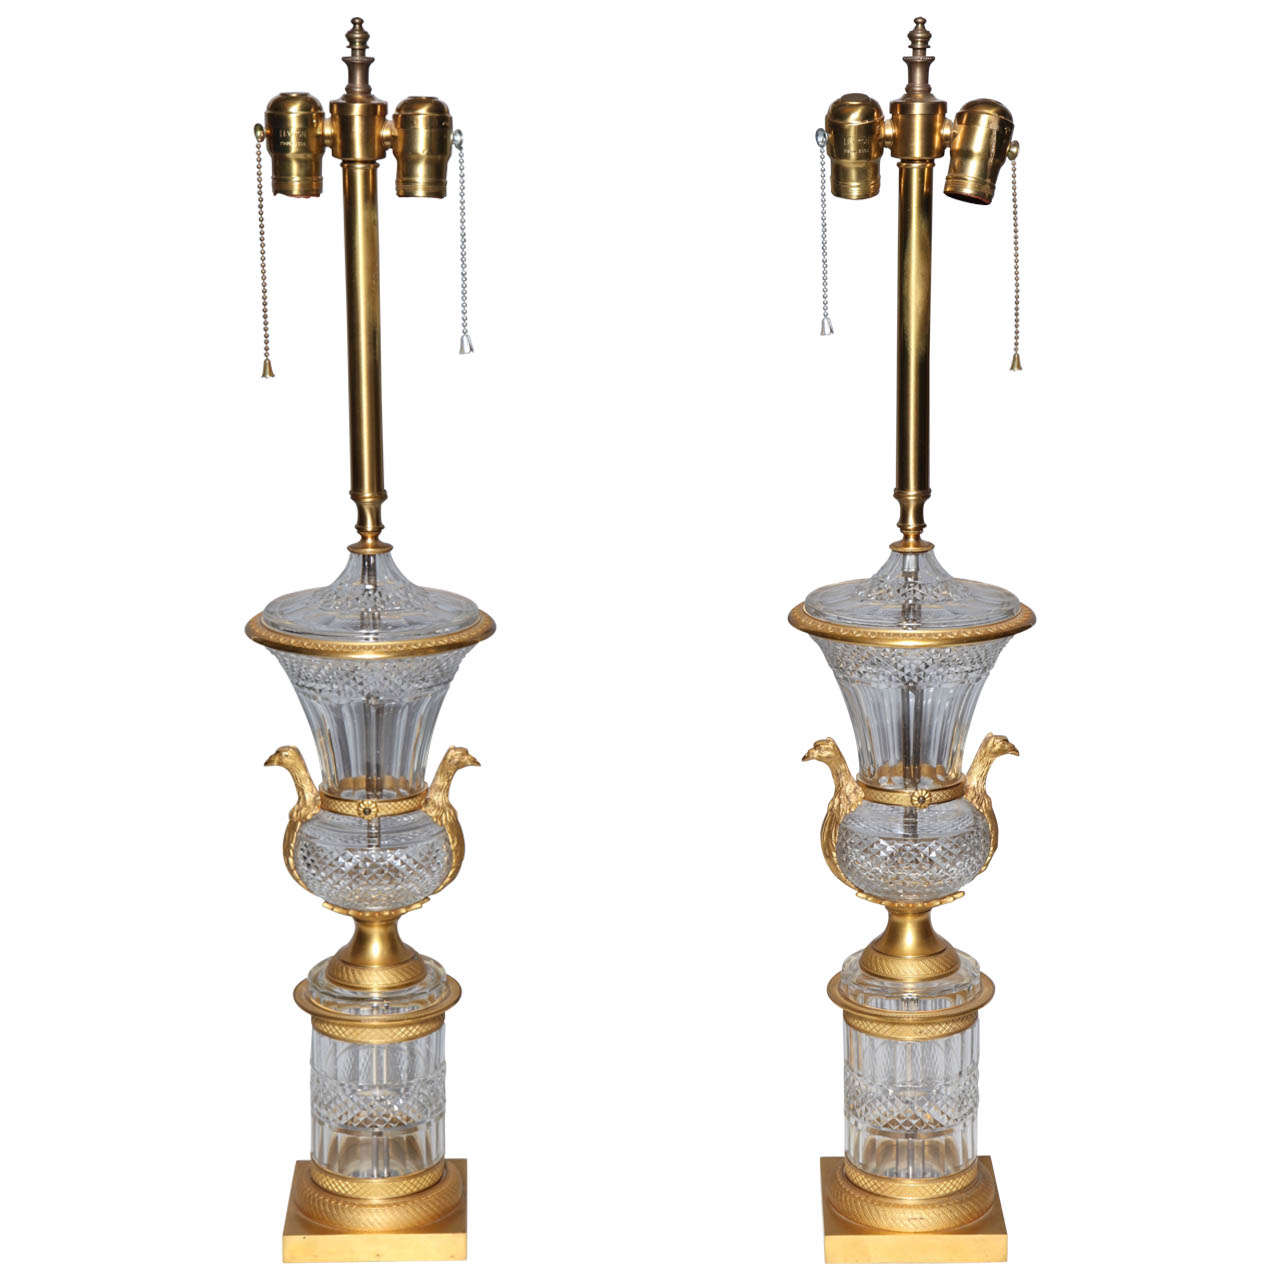 Magnifique paire d'urnes/ampoules anciennes françaises montées sur cristal et bronze doré